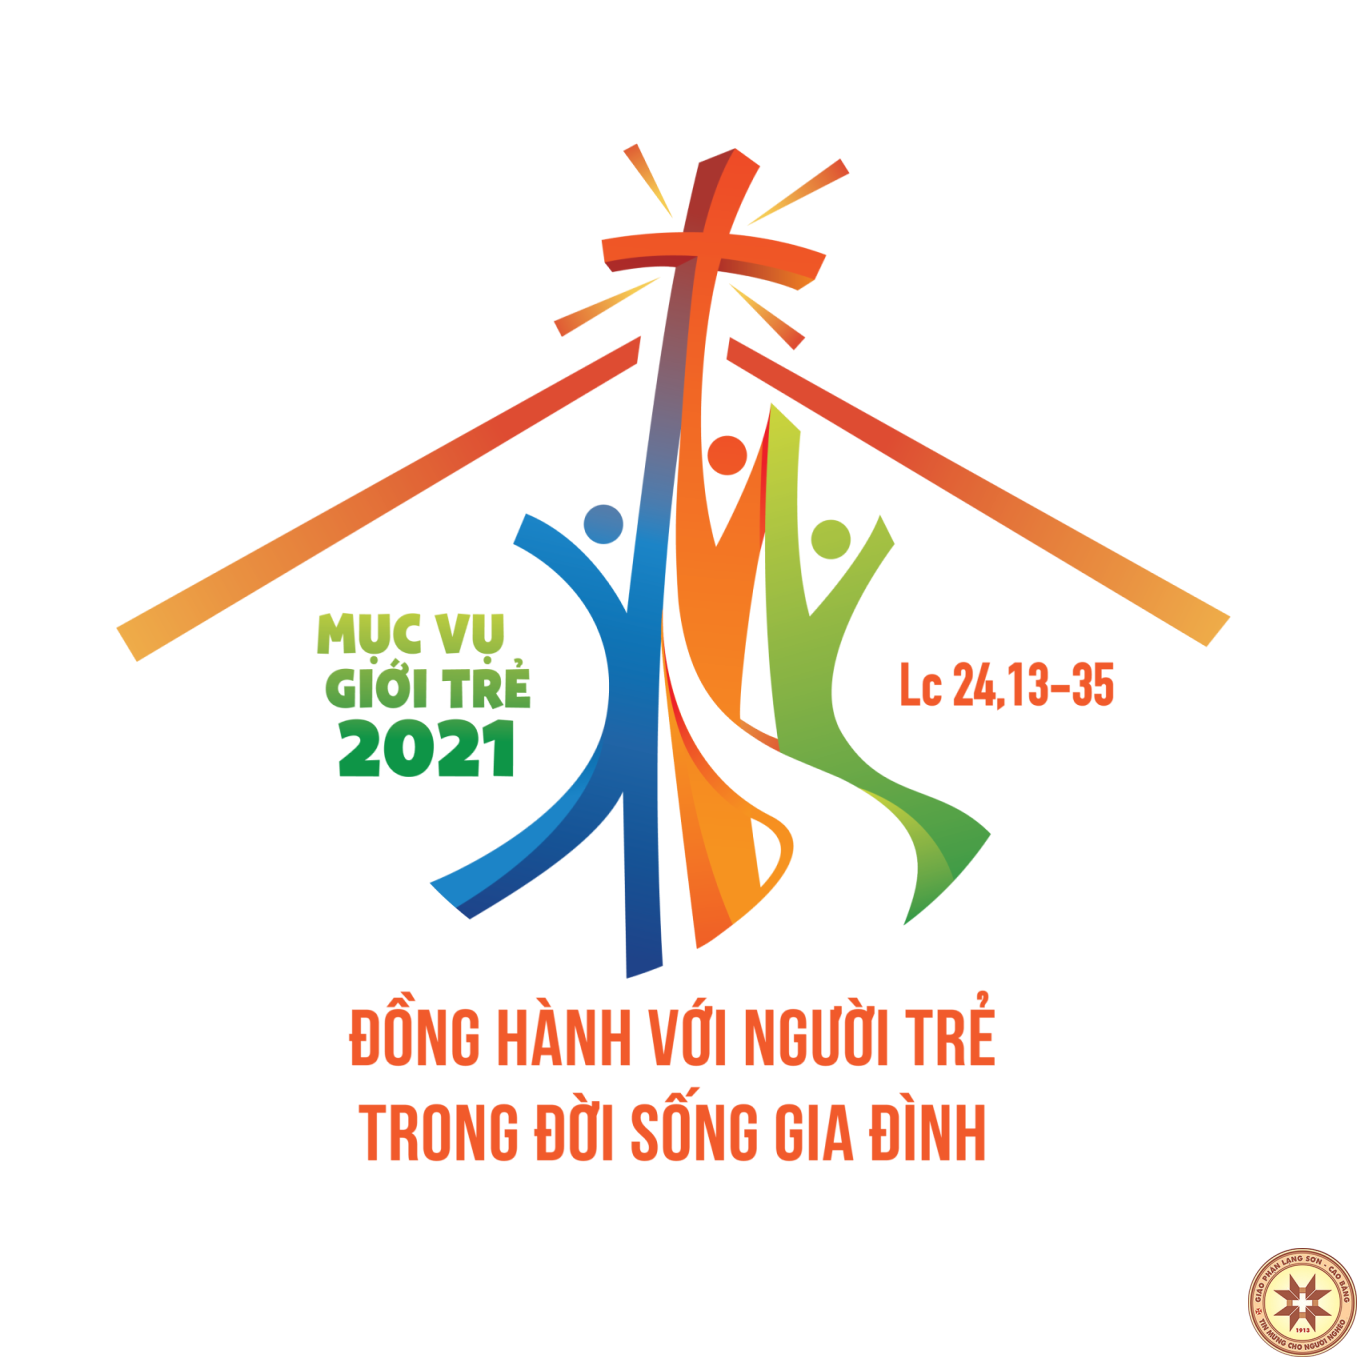 Công bố Logo Năm Mục vụ Giới trẻ 2021